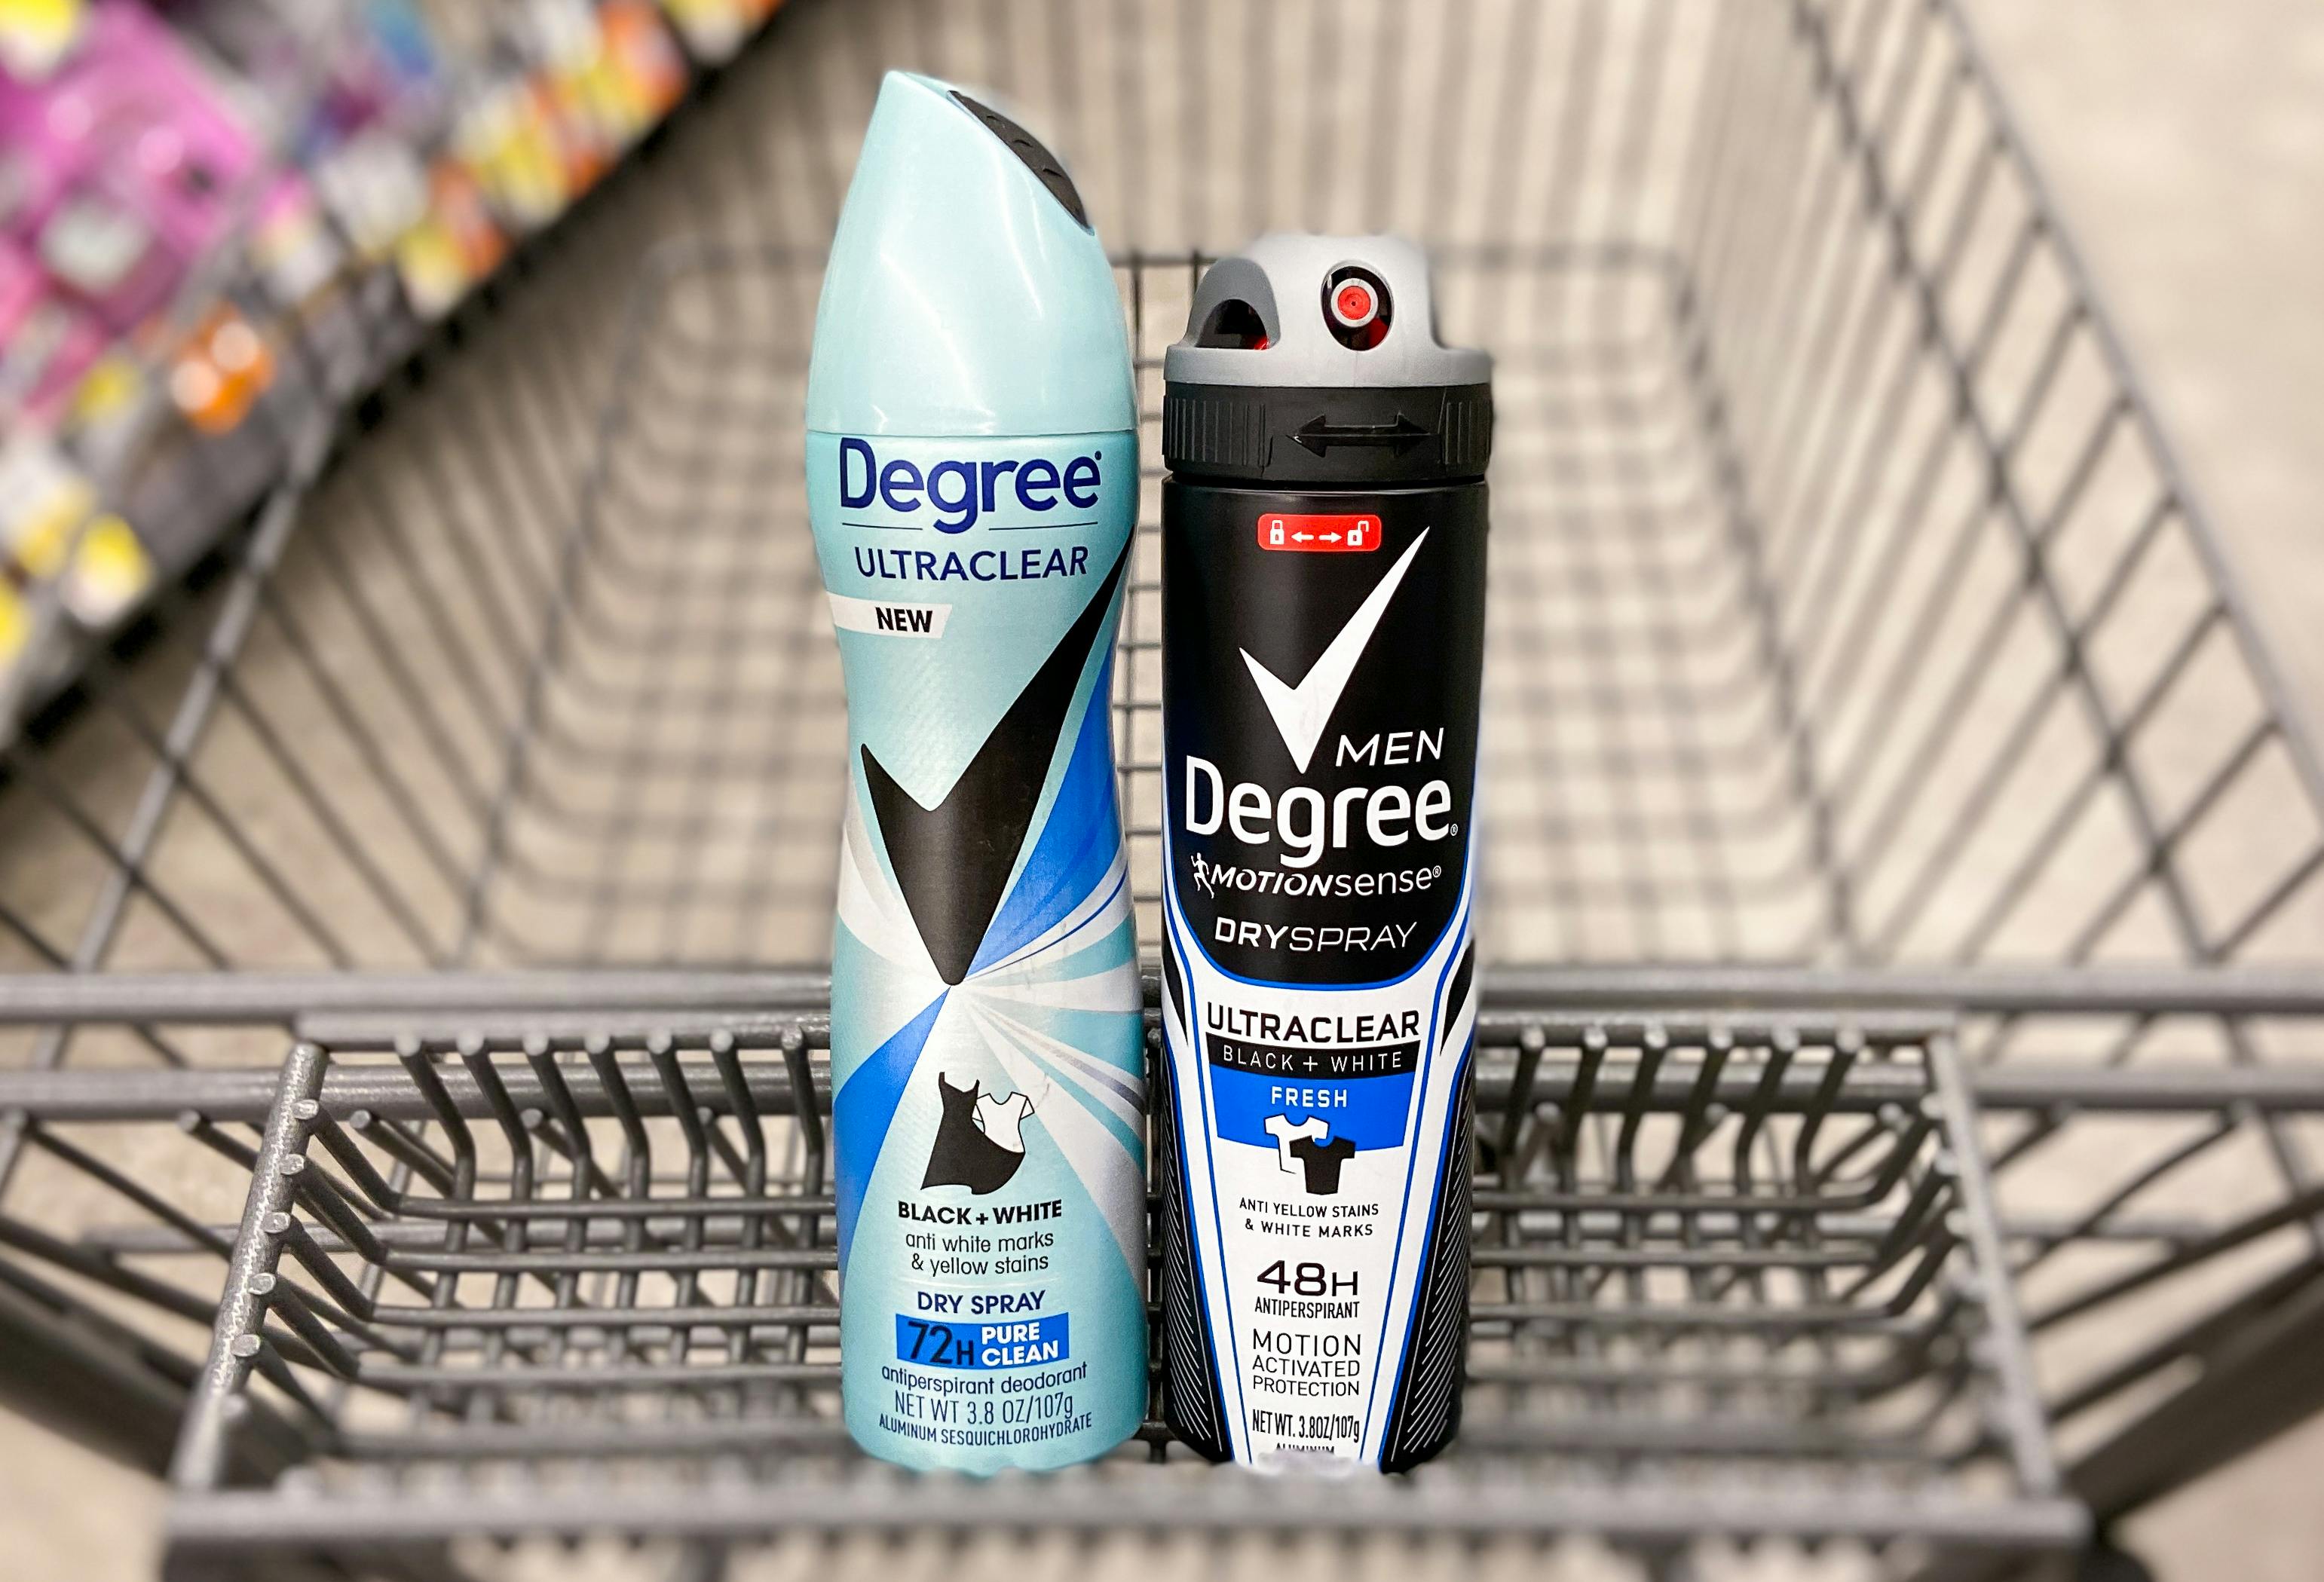 wags-sponsored-degree-deodorant-deal-dry-spray-coupon-em-dec-20219795-2